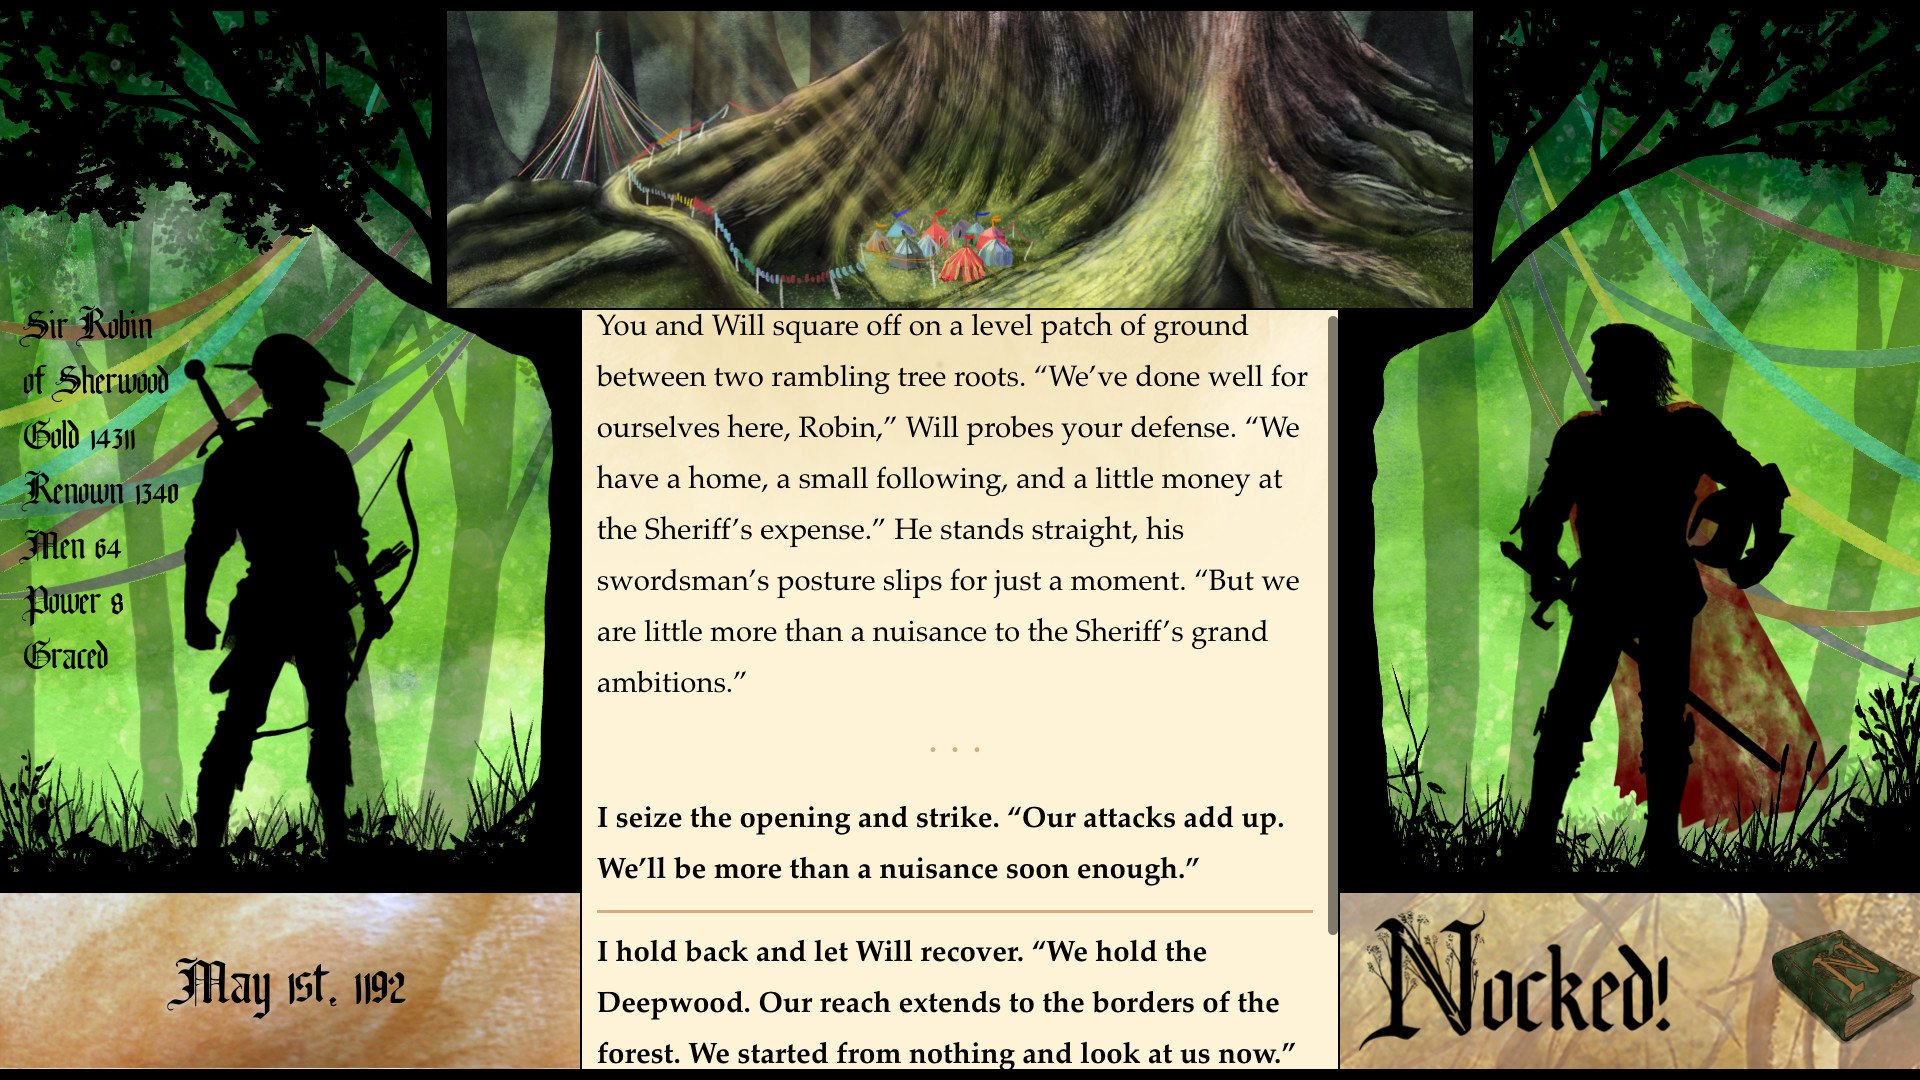 Nocked! True Tales of Robin Hood Steam CD Key 2.88 usd